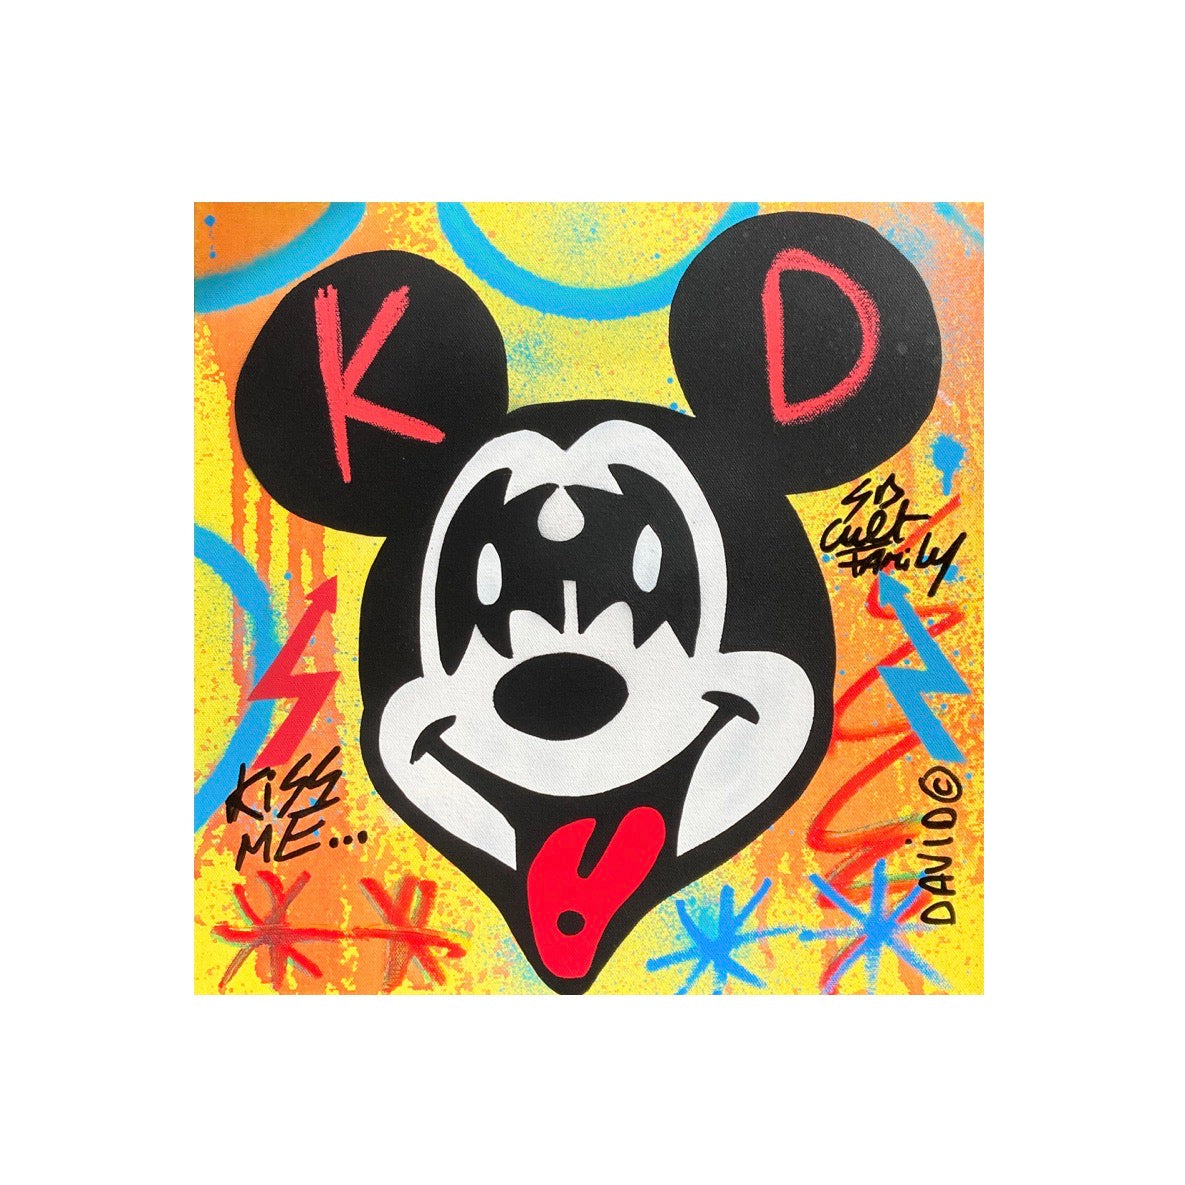 Kiss Me di David Karsenty. Opera unica tecnica mista su tela rappresentante l'iconico personaggio Disney raffigurato in maniera divertente dall'artista  | CD Studio d'Arte